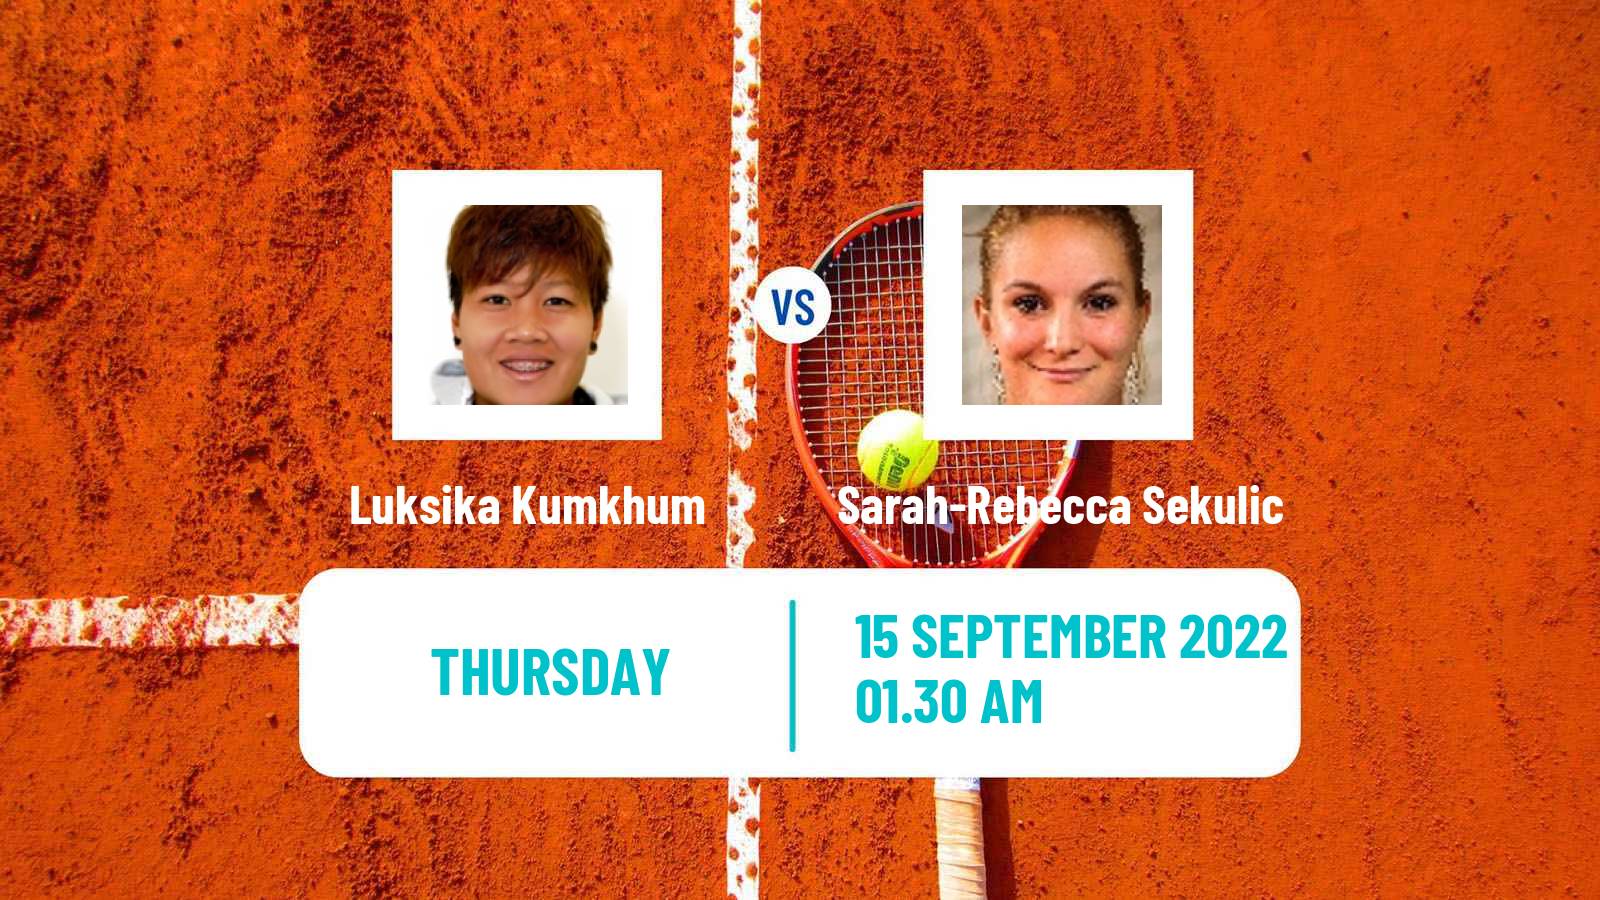 Tennis ITF Tournaments Luksika Kumkhum - Sarah-Rebecca Sekulic